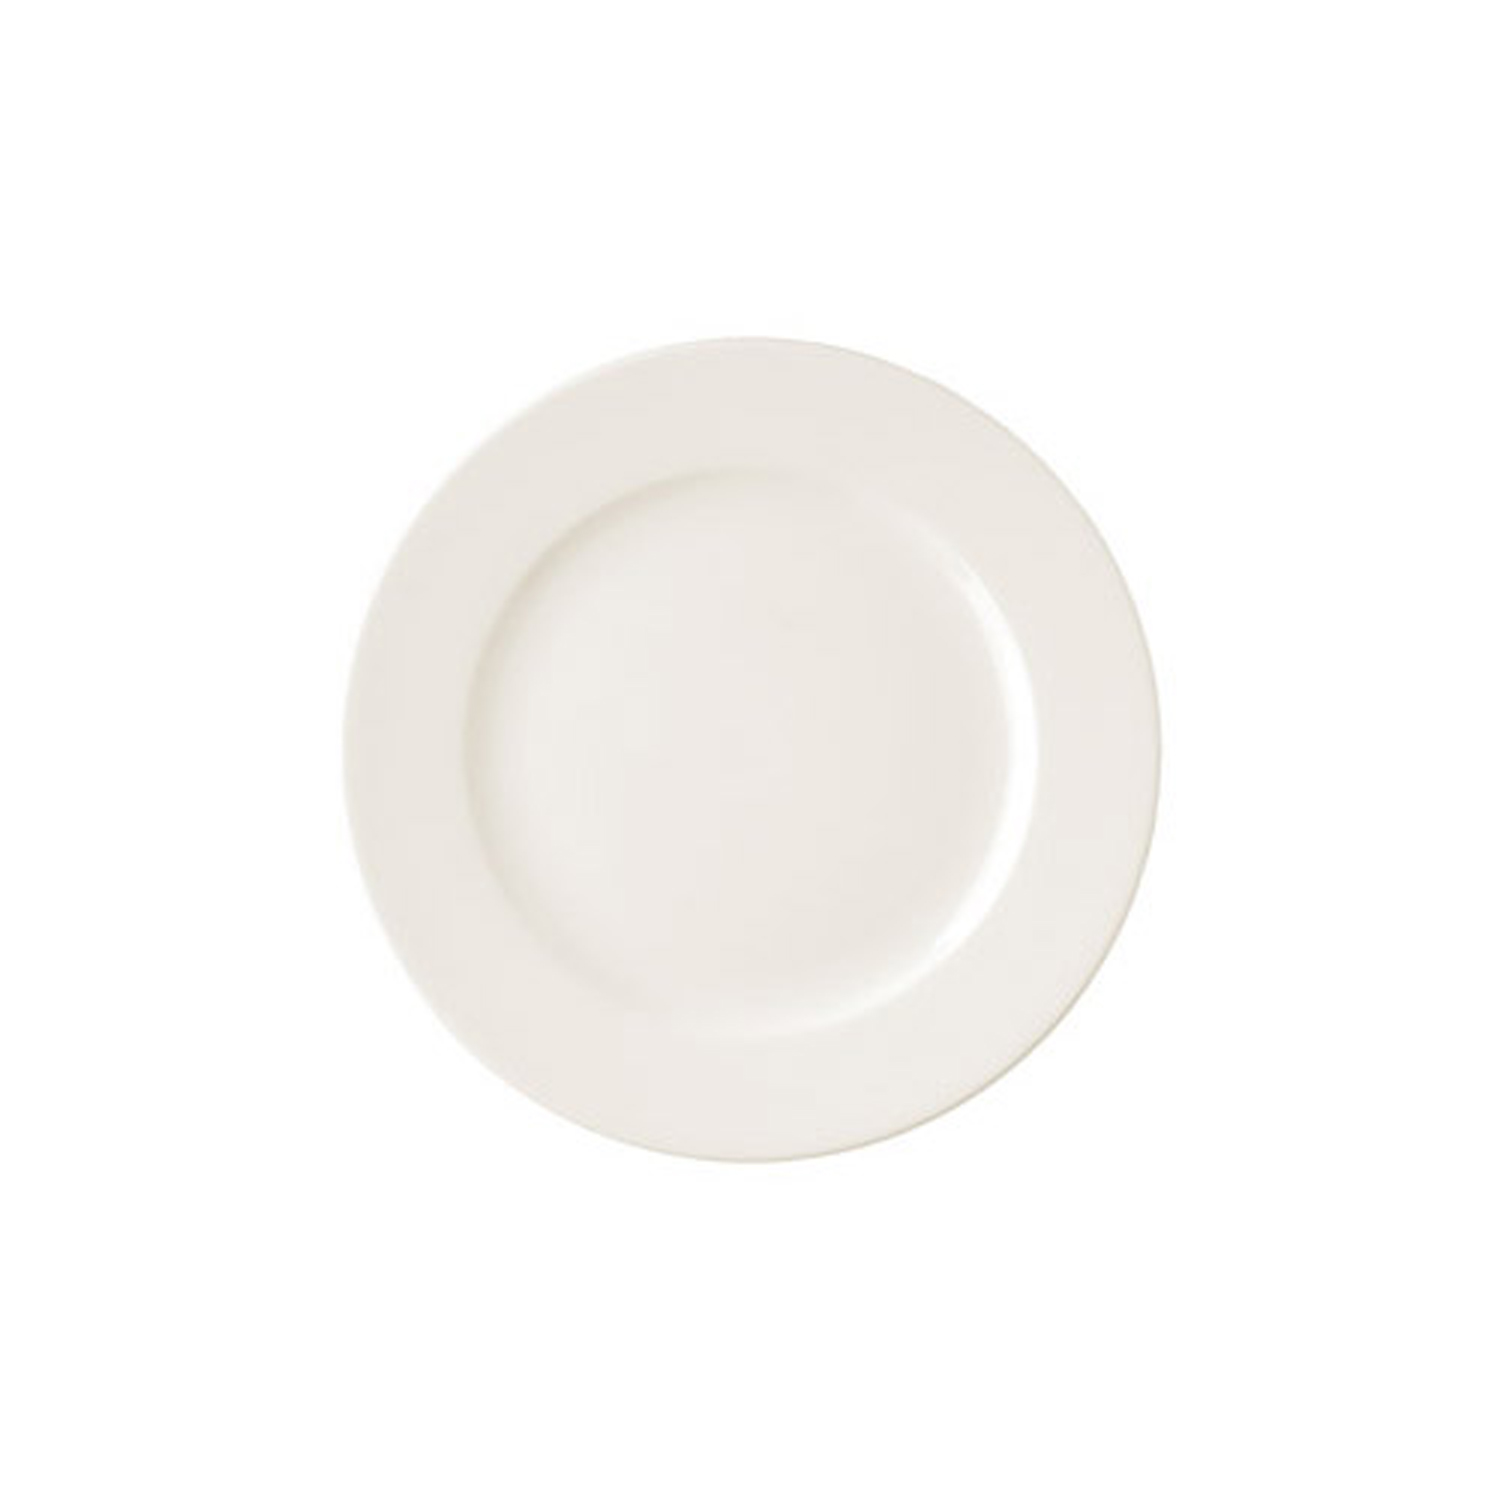 Плоская тарелка RAK Porcelain Banquet 25 см (33120)